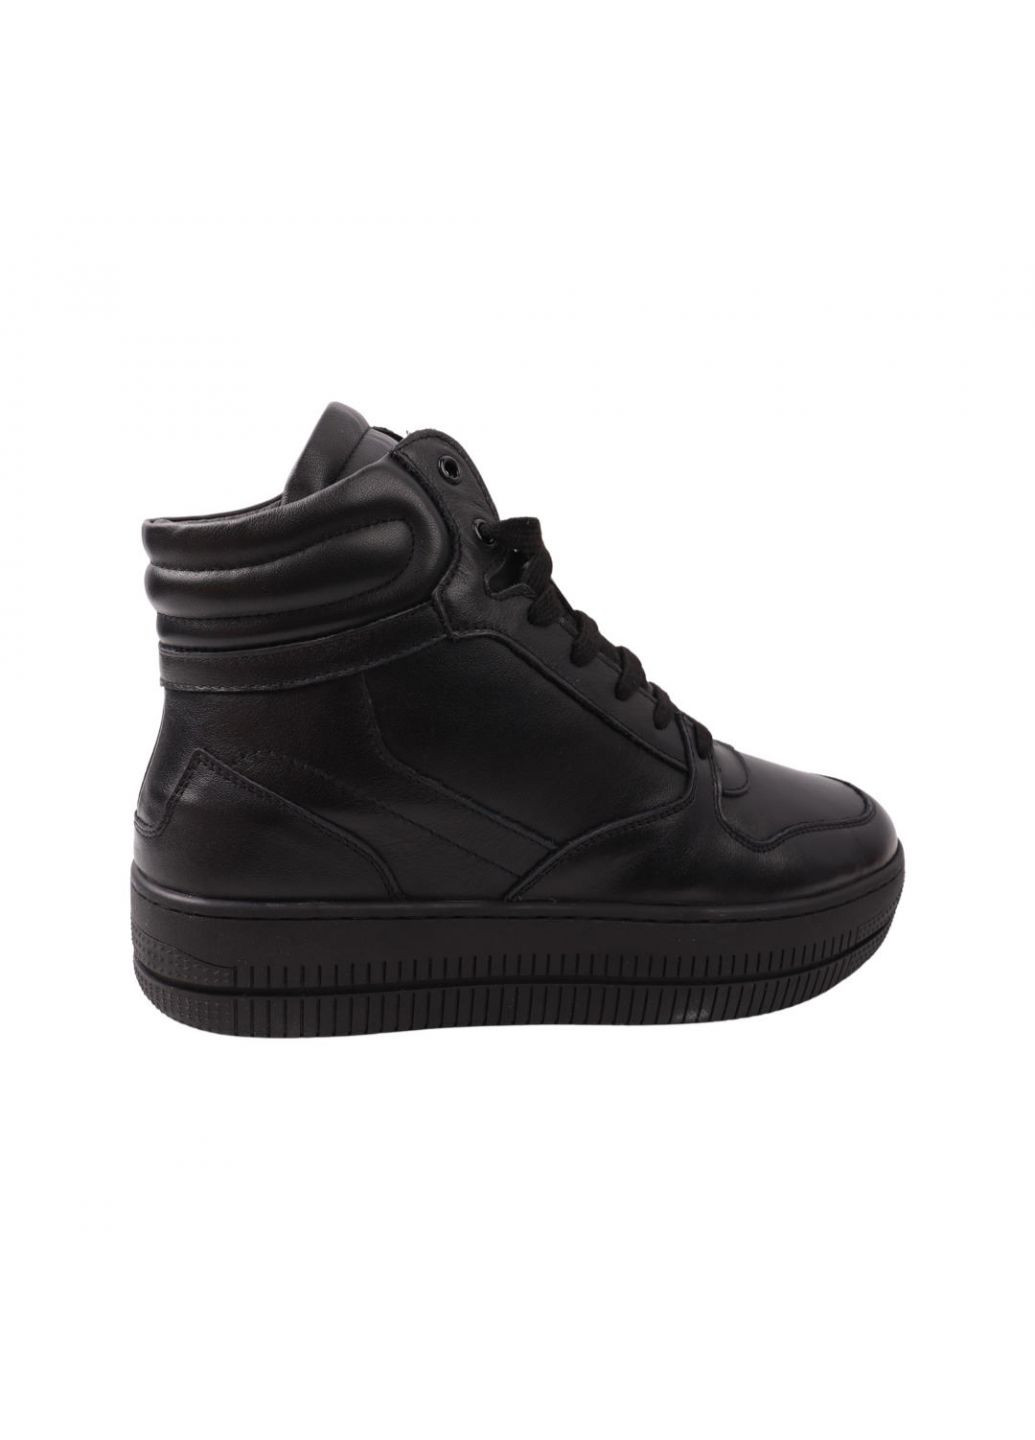 Черные ботинки мужские черные натуральная кожа Lifexpert